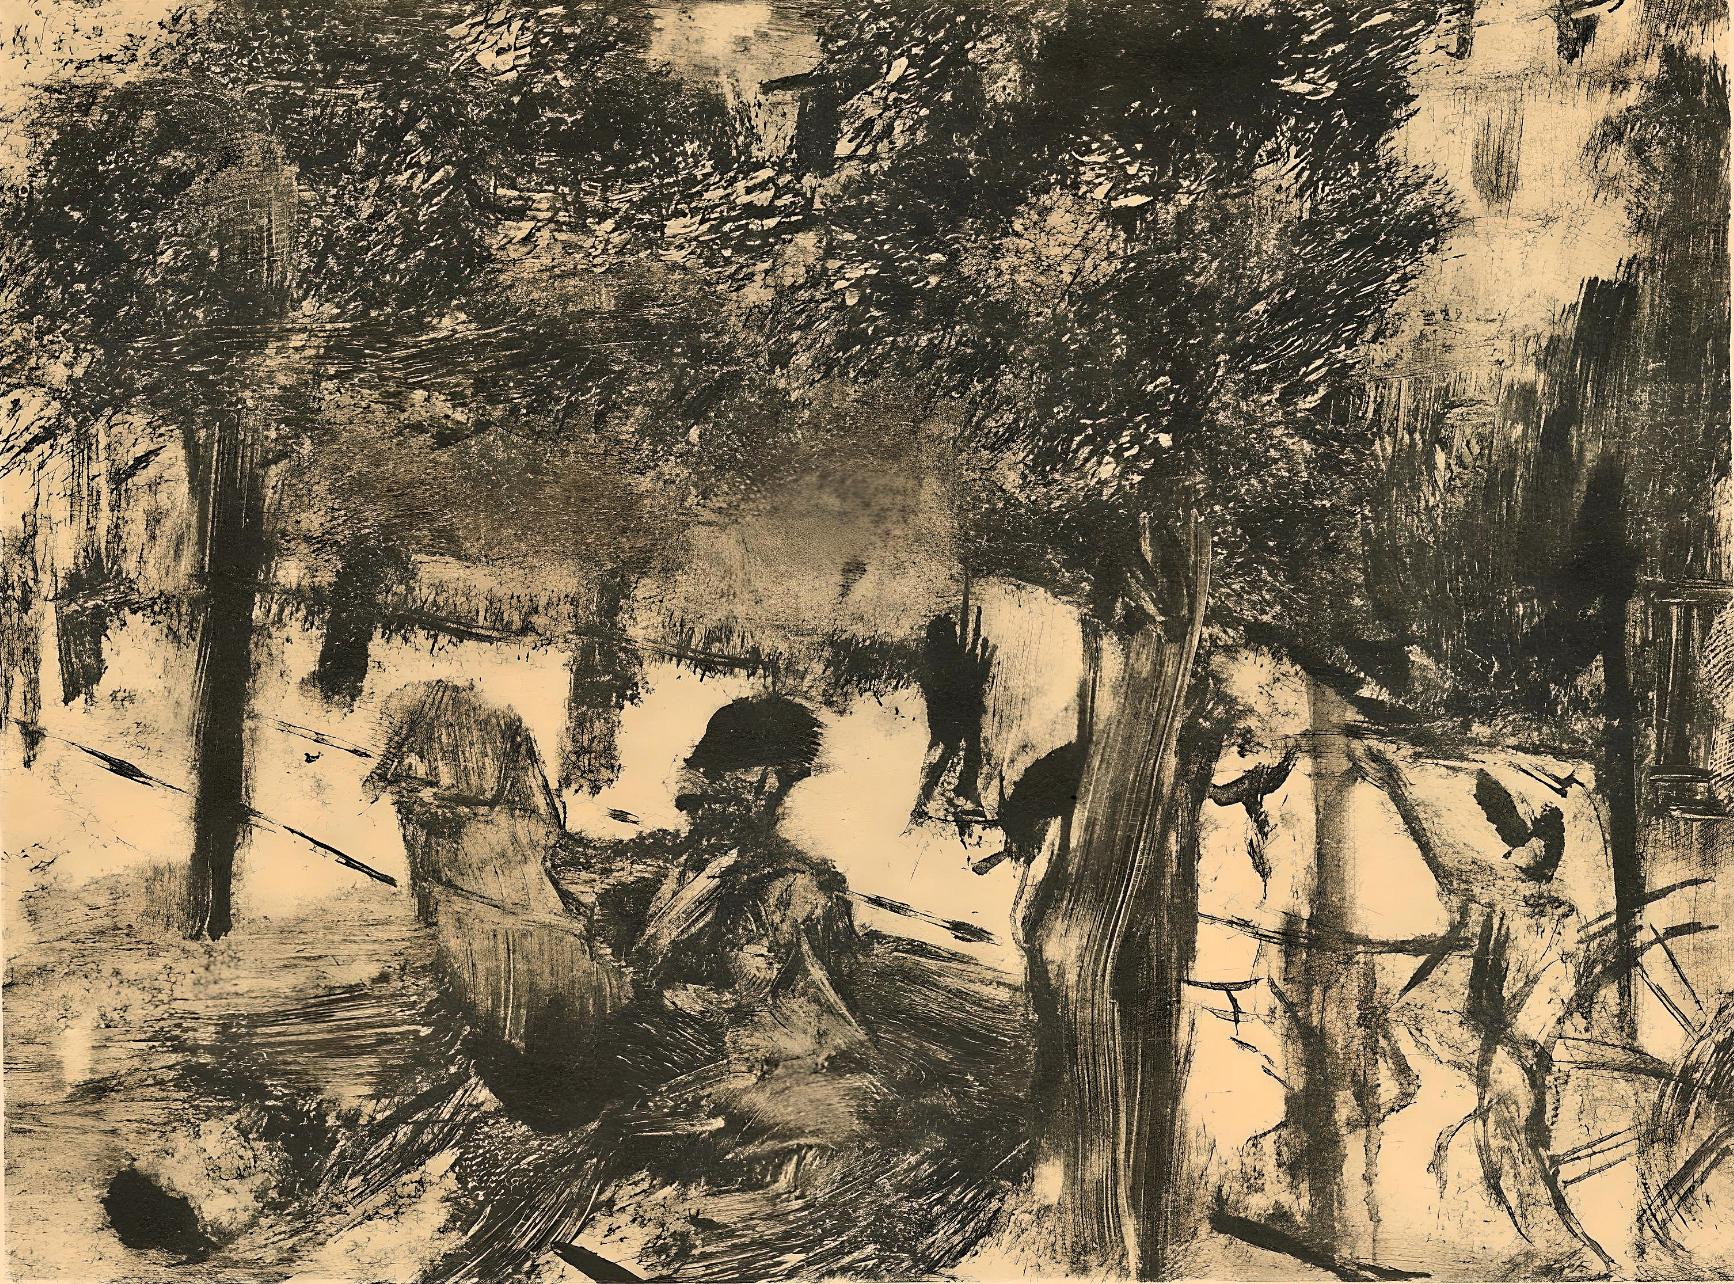 Degas, Avenue du Bois-de-Bologne, Les Monotypes (after)